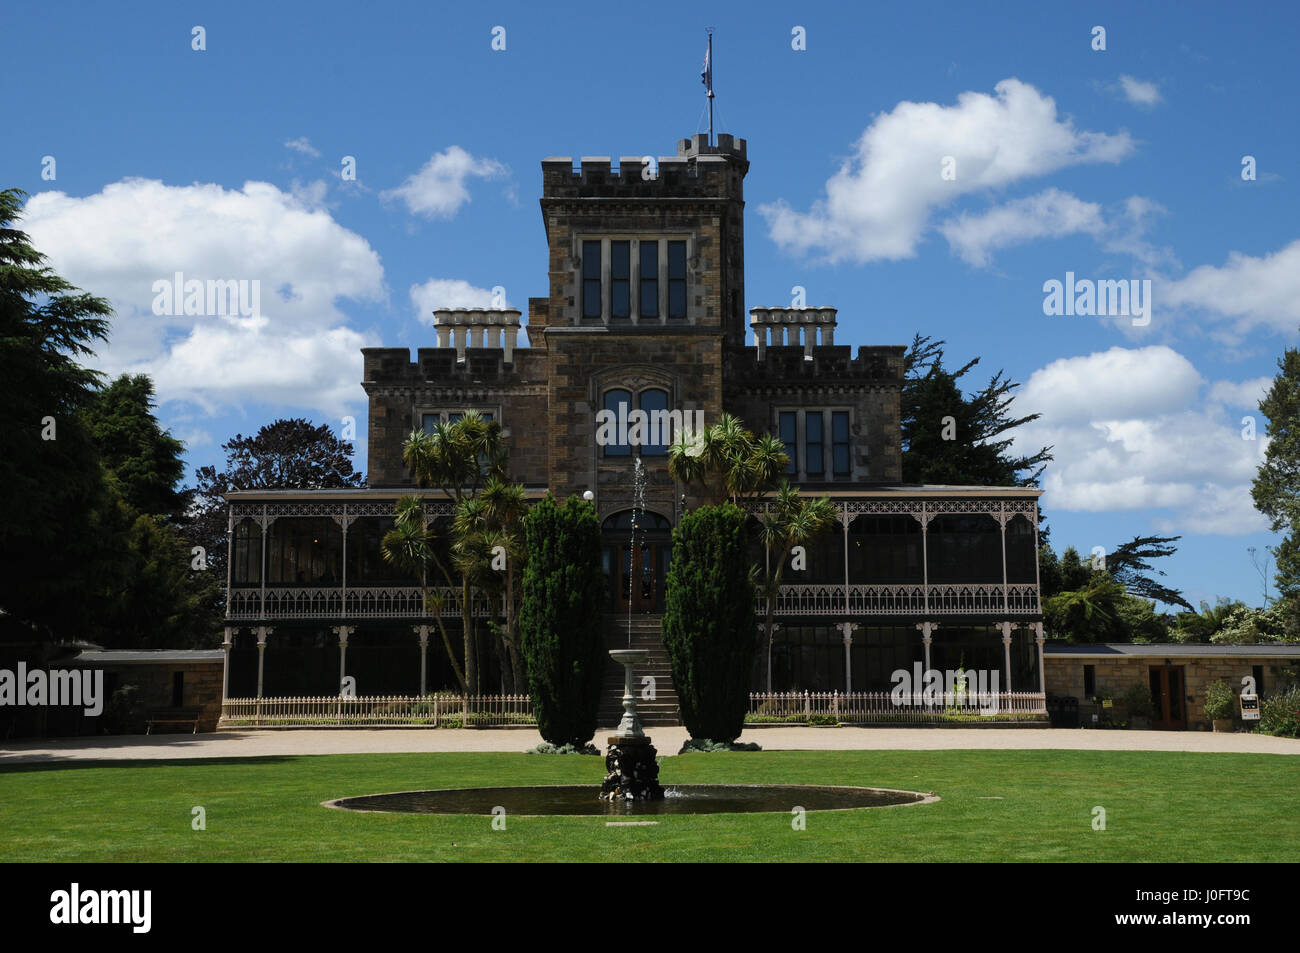 Castillo Larnach, nr. Dunedin en la Isla del Sur de Nueva Zelanda afirma ser el único castillo del país. Fue construida 1871 por William Larnach. Foto de stock